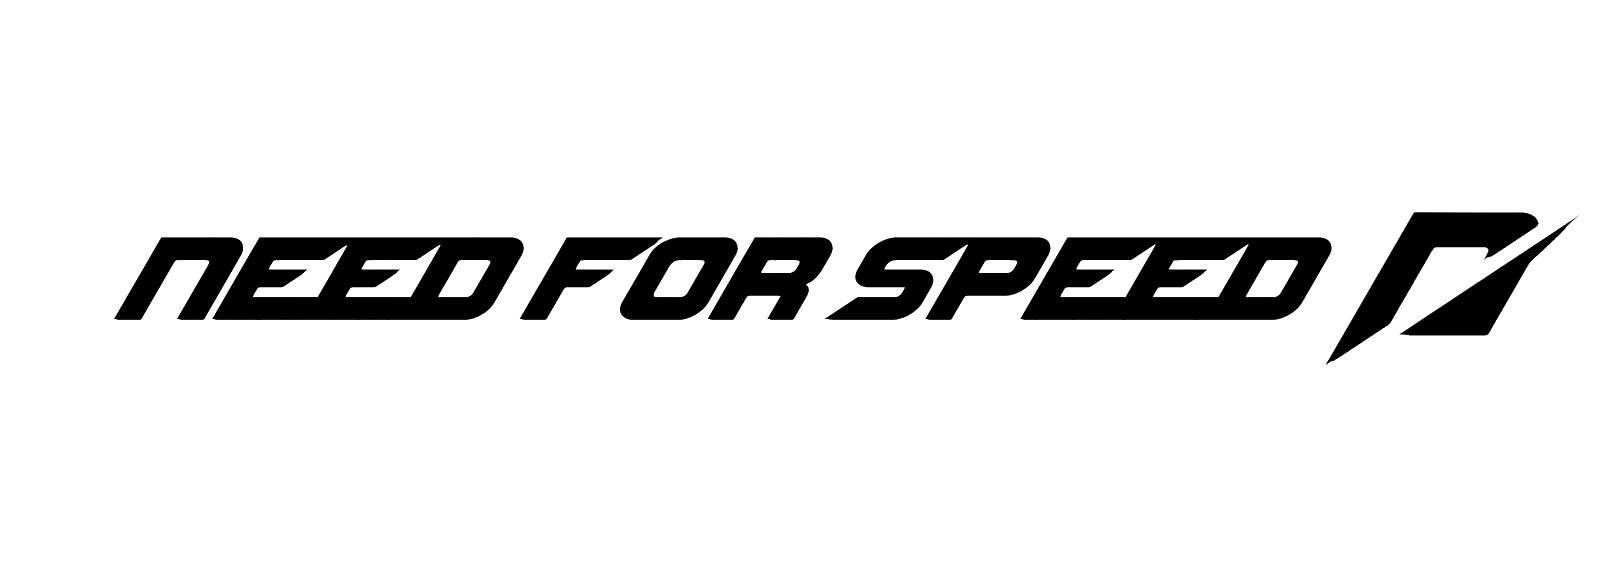 Imagen de logotipo de velocidad png hd